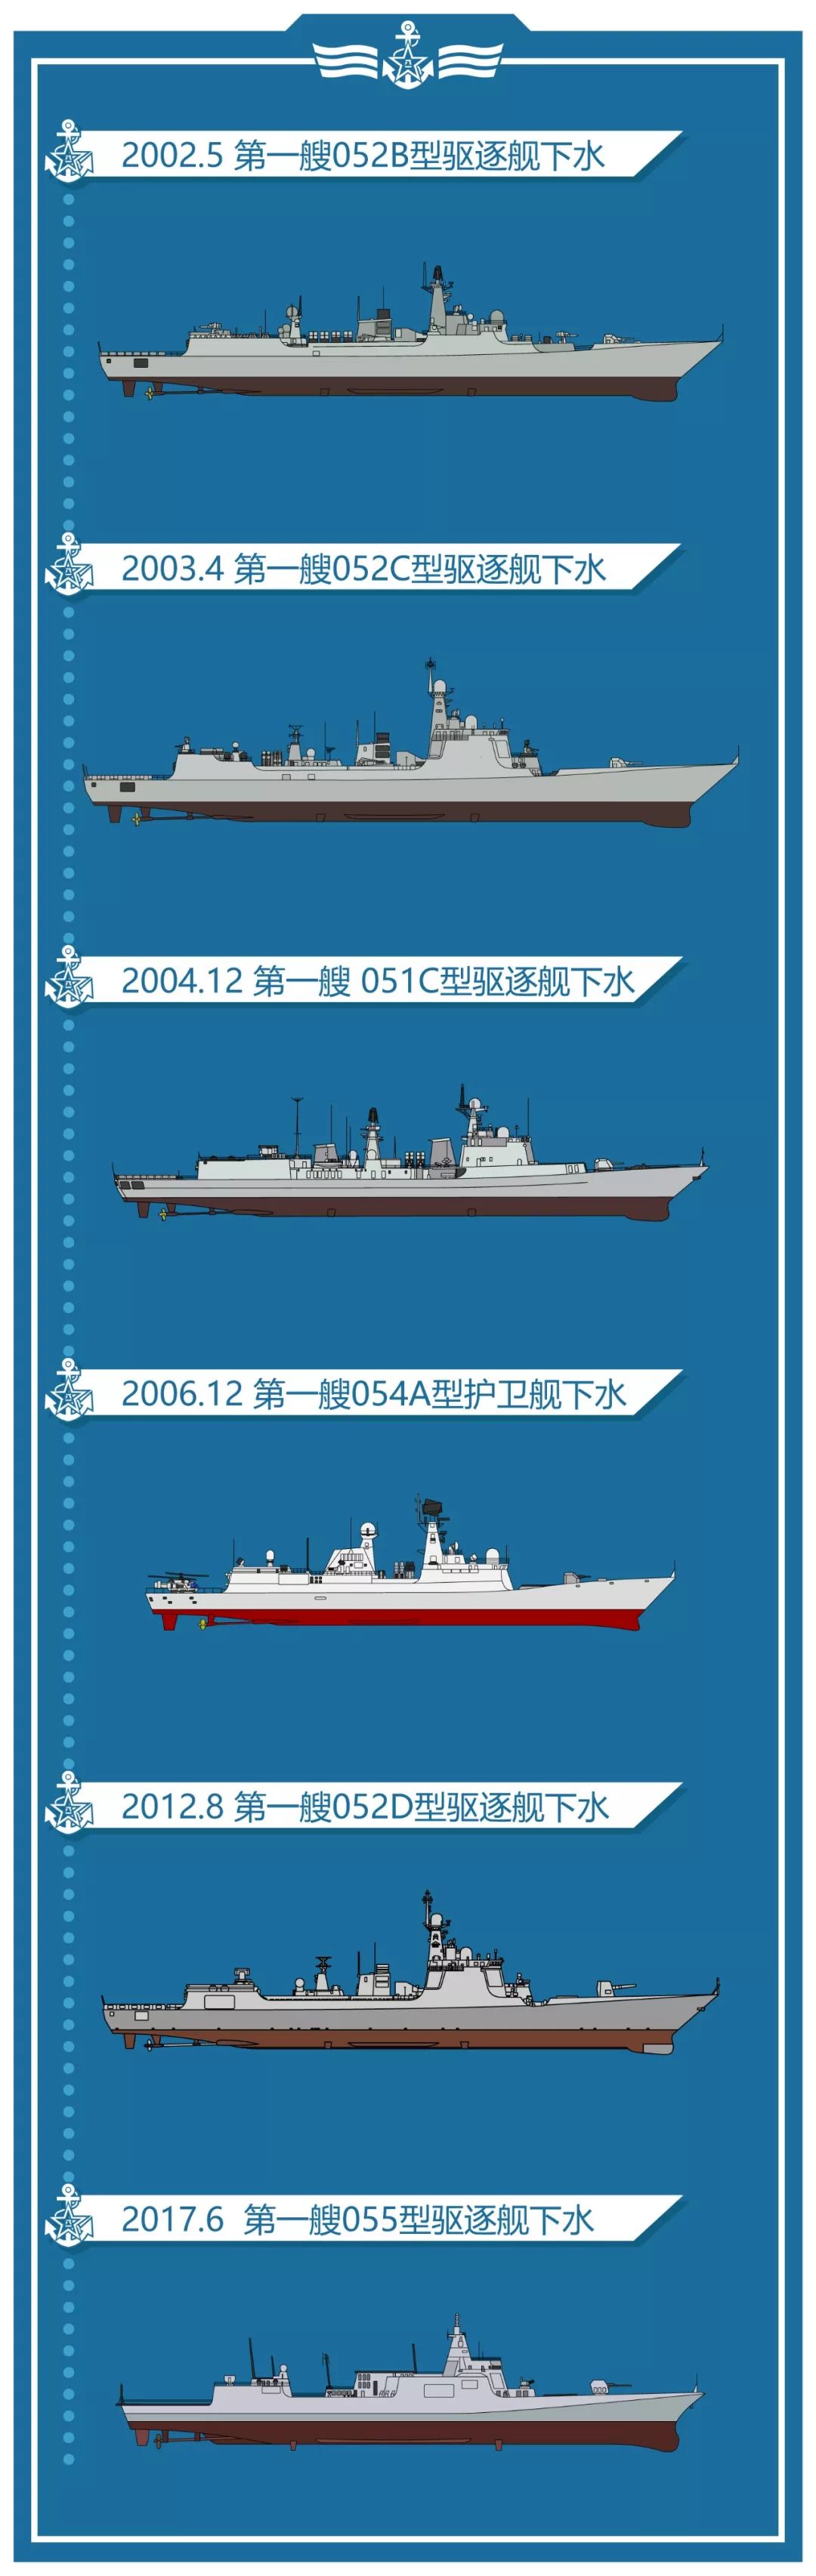 中国海军一口气退役四艘驱逐舰!这么壕的举动难到是舷号不够用了?